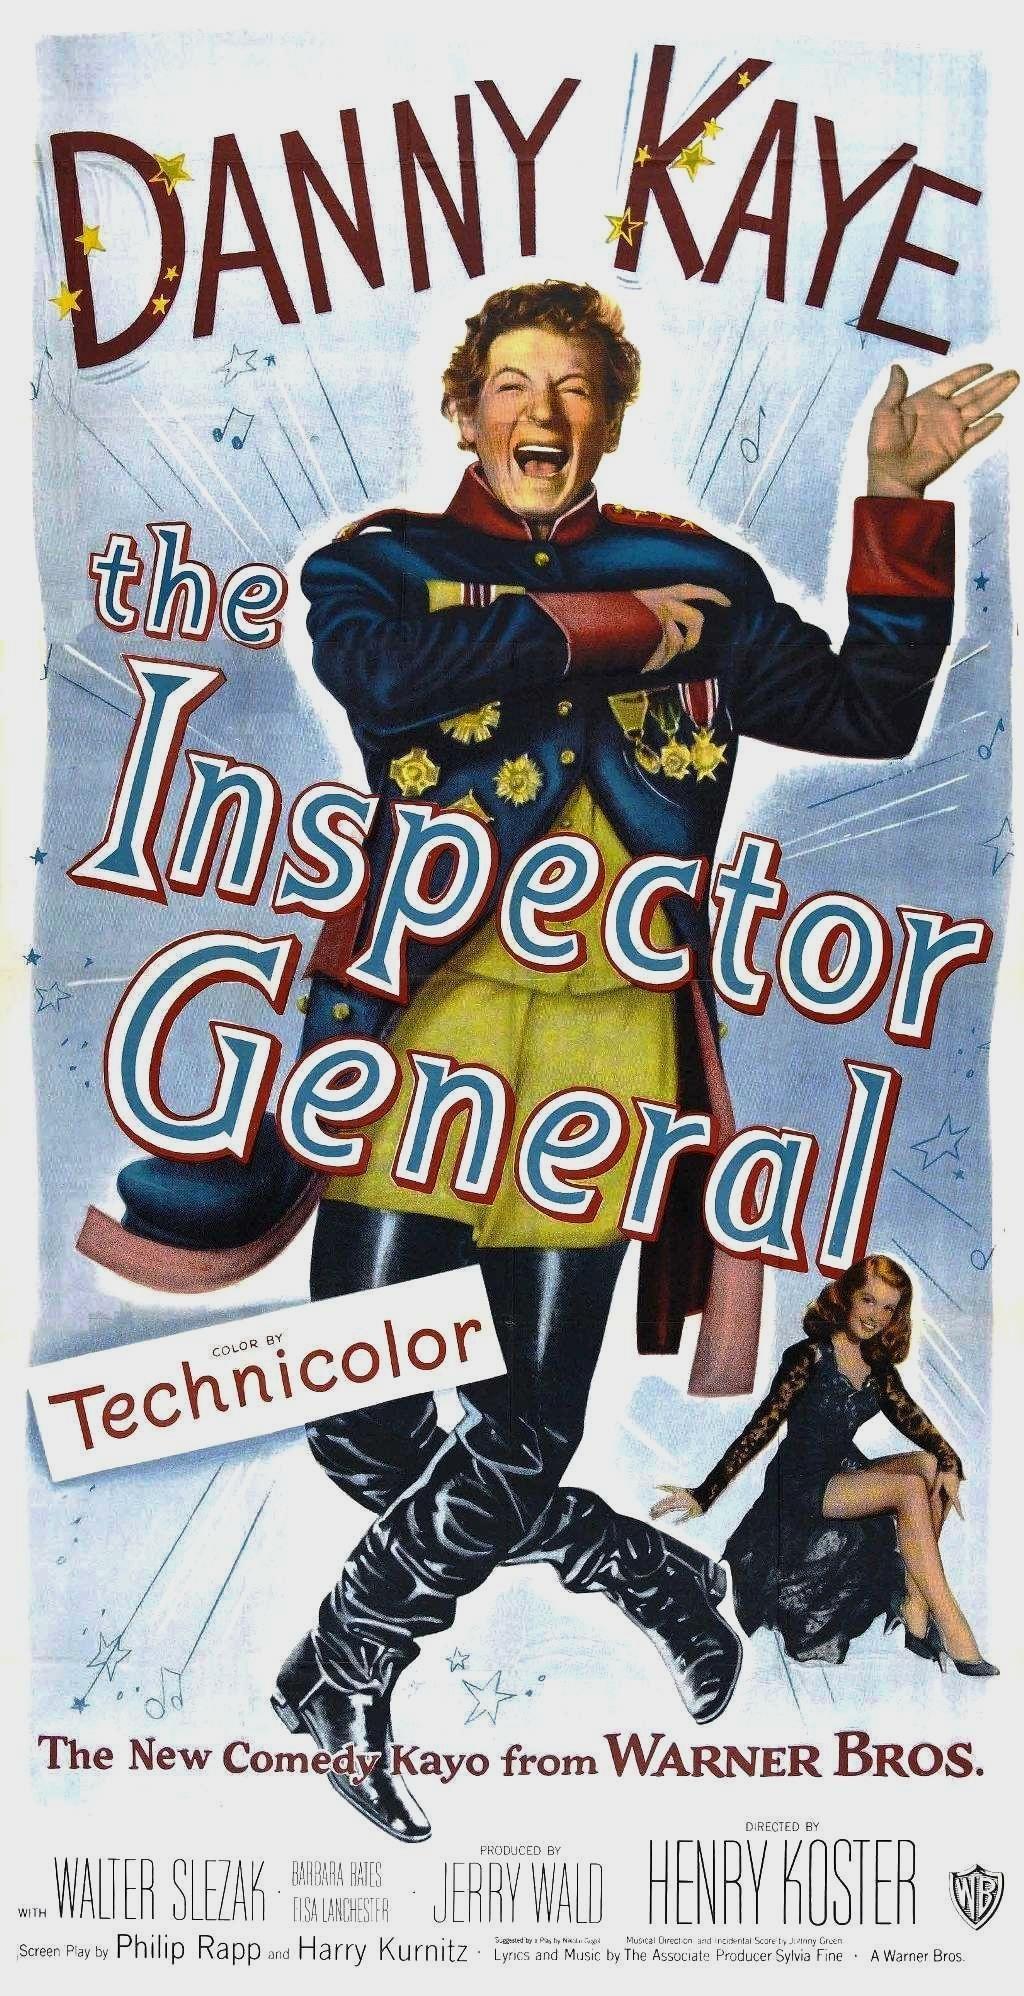 Постер фильма Inspector General